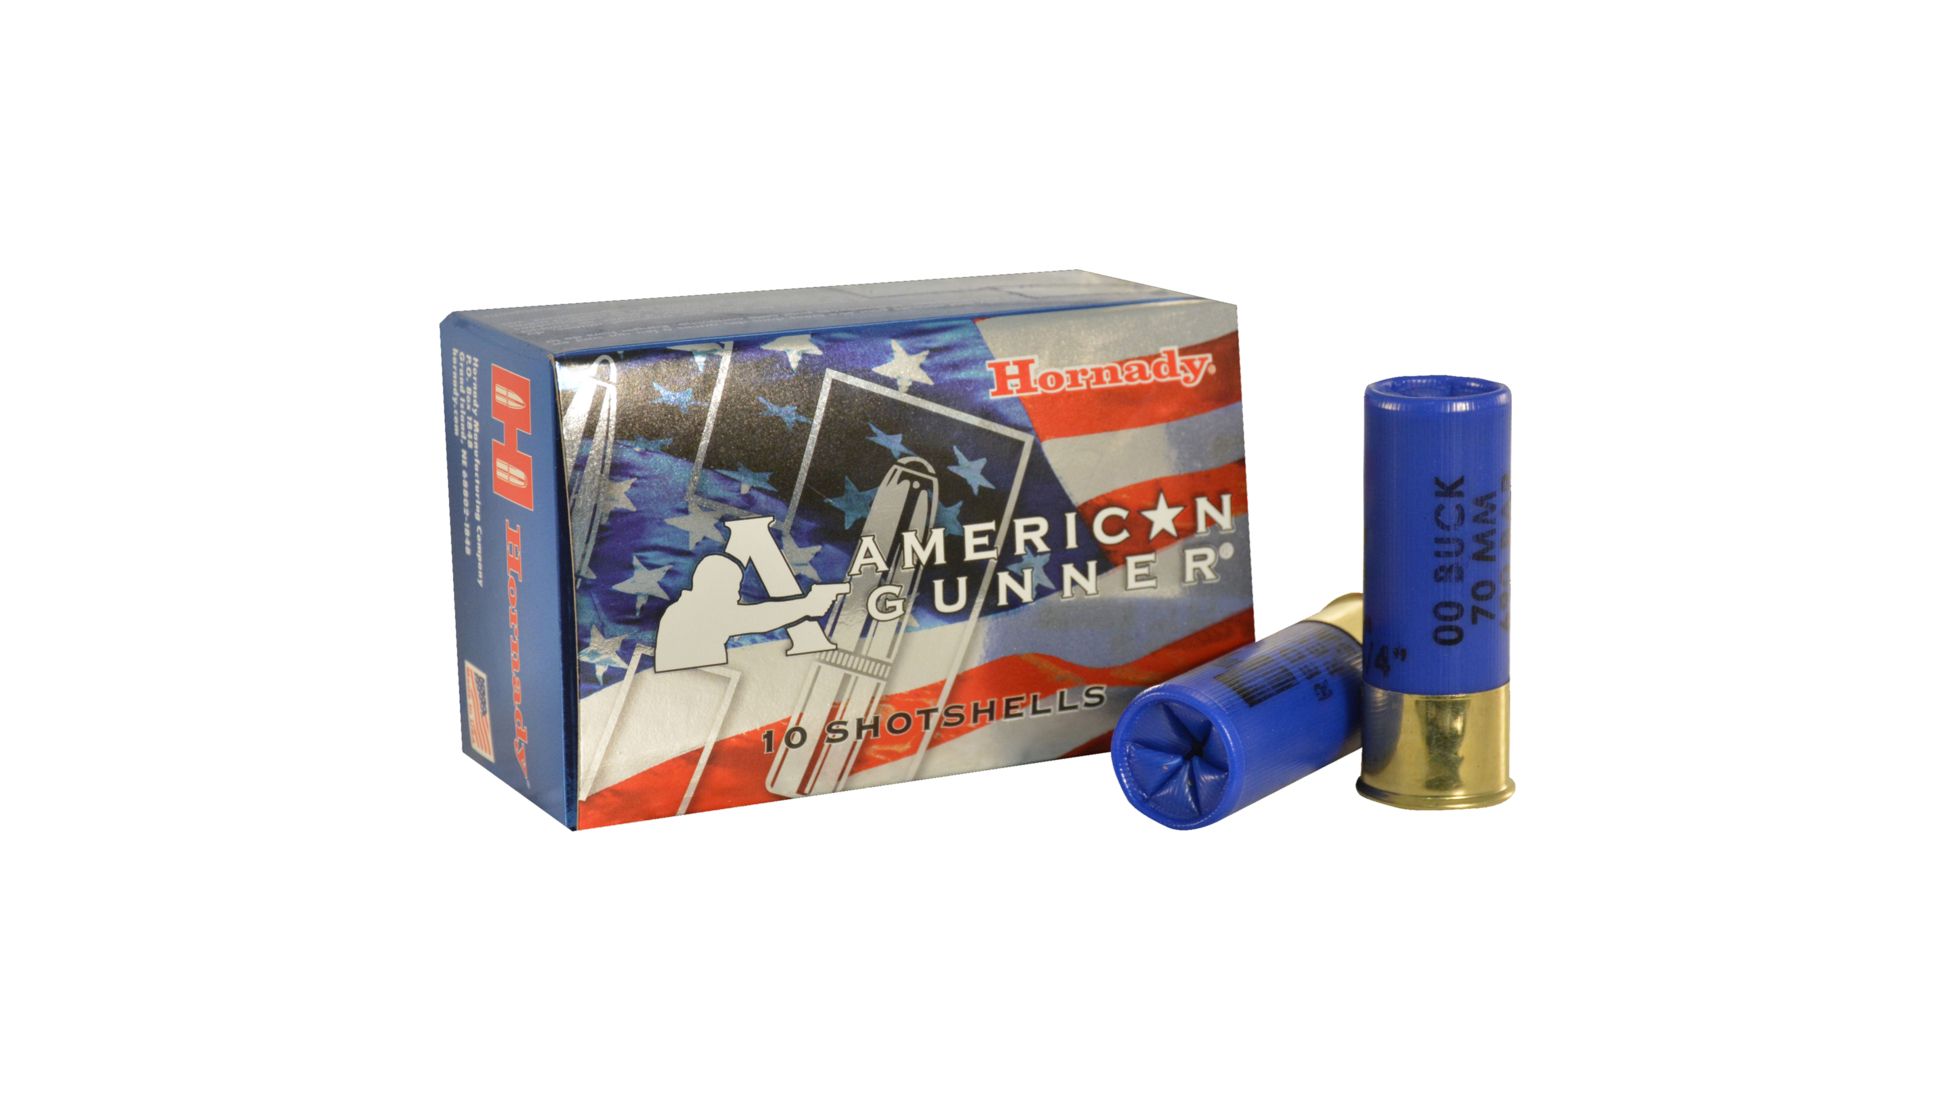 Hornady American Gunner 12 Gauge 8 Pellet 2.75" Centerfire Shotgun Buckshot Ammunition